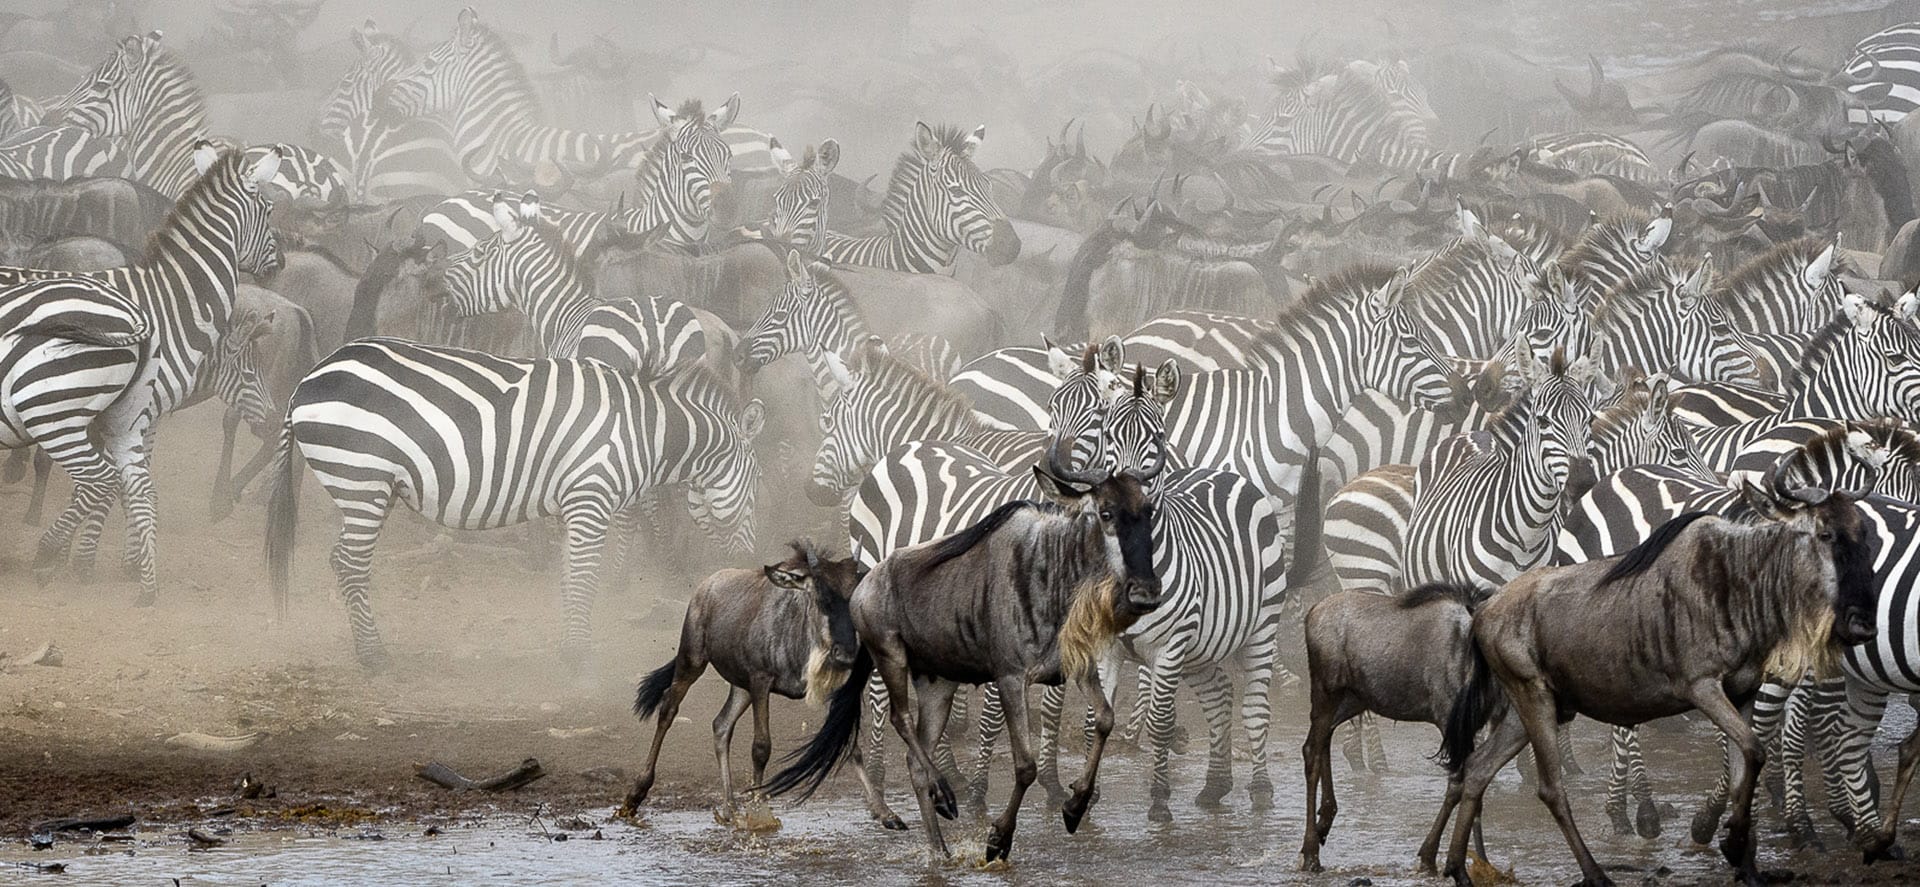 Wildebeest Mara Migration 2020